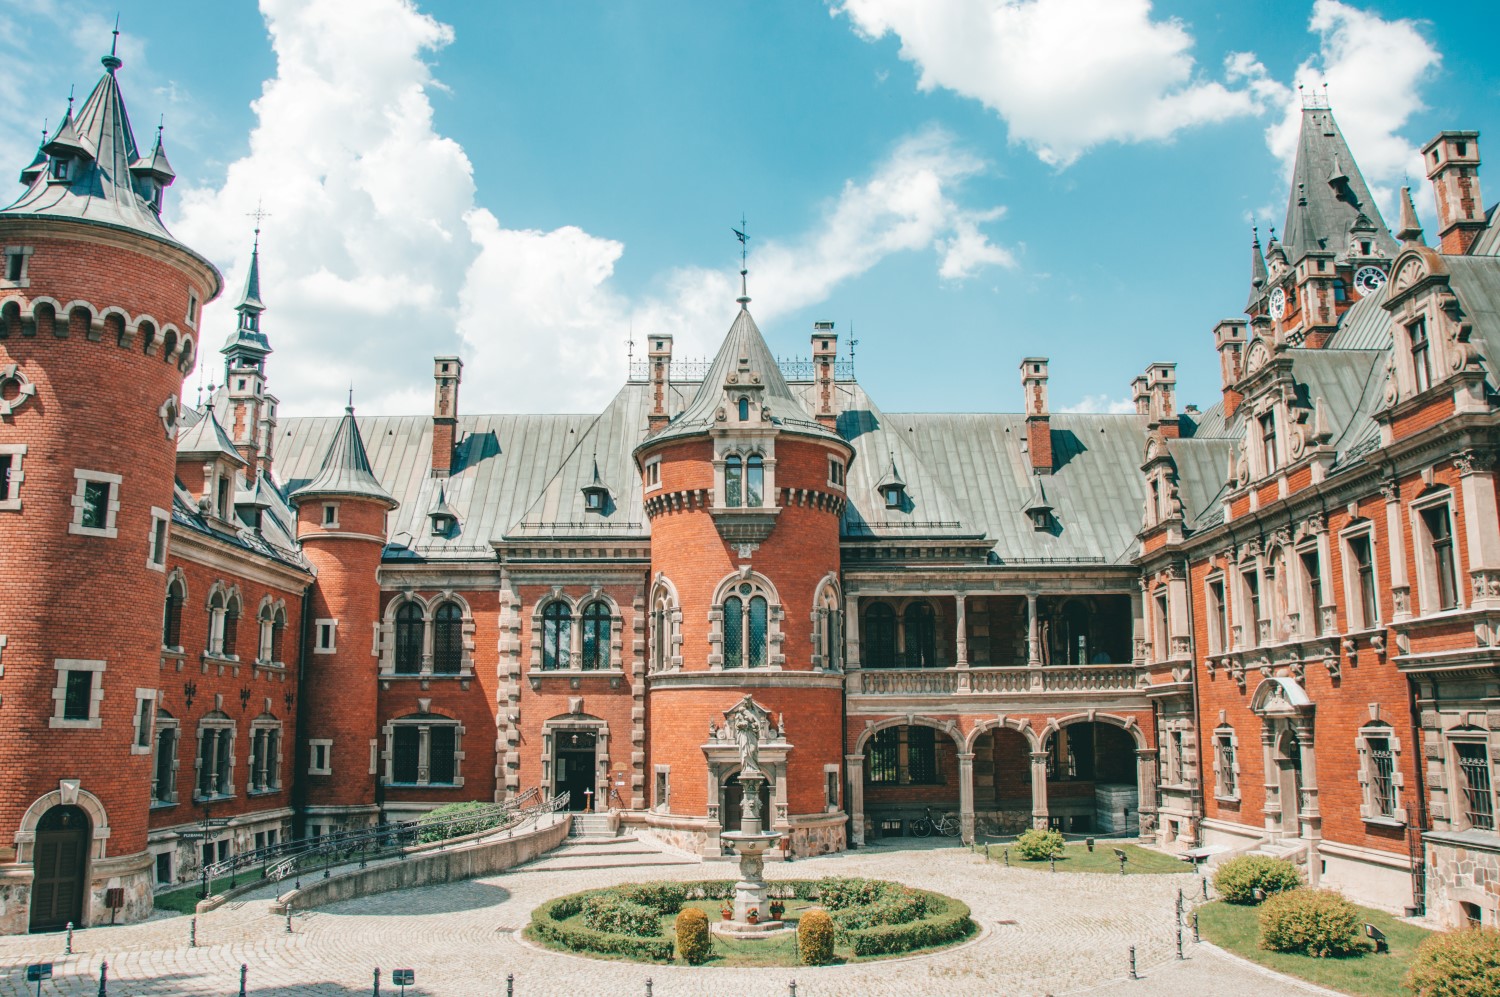 Pałac w Pławniowicach, Śląsk - bele kaj - blog podróżniczy